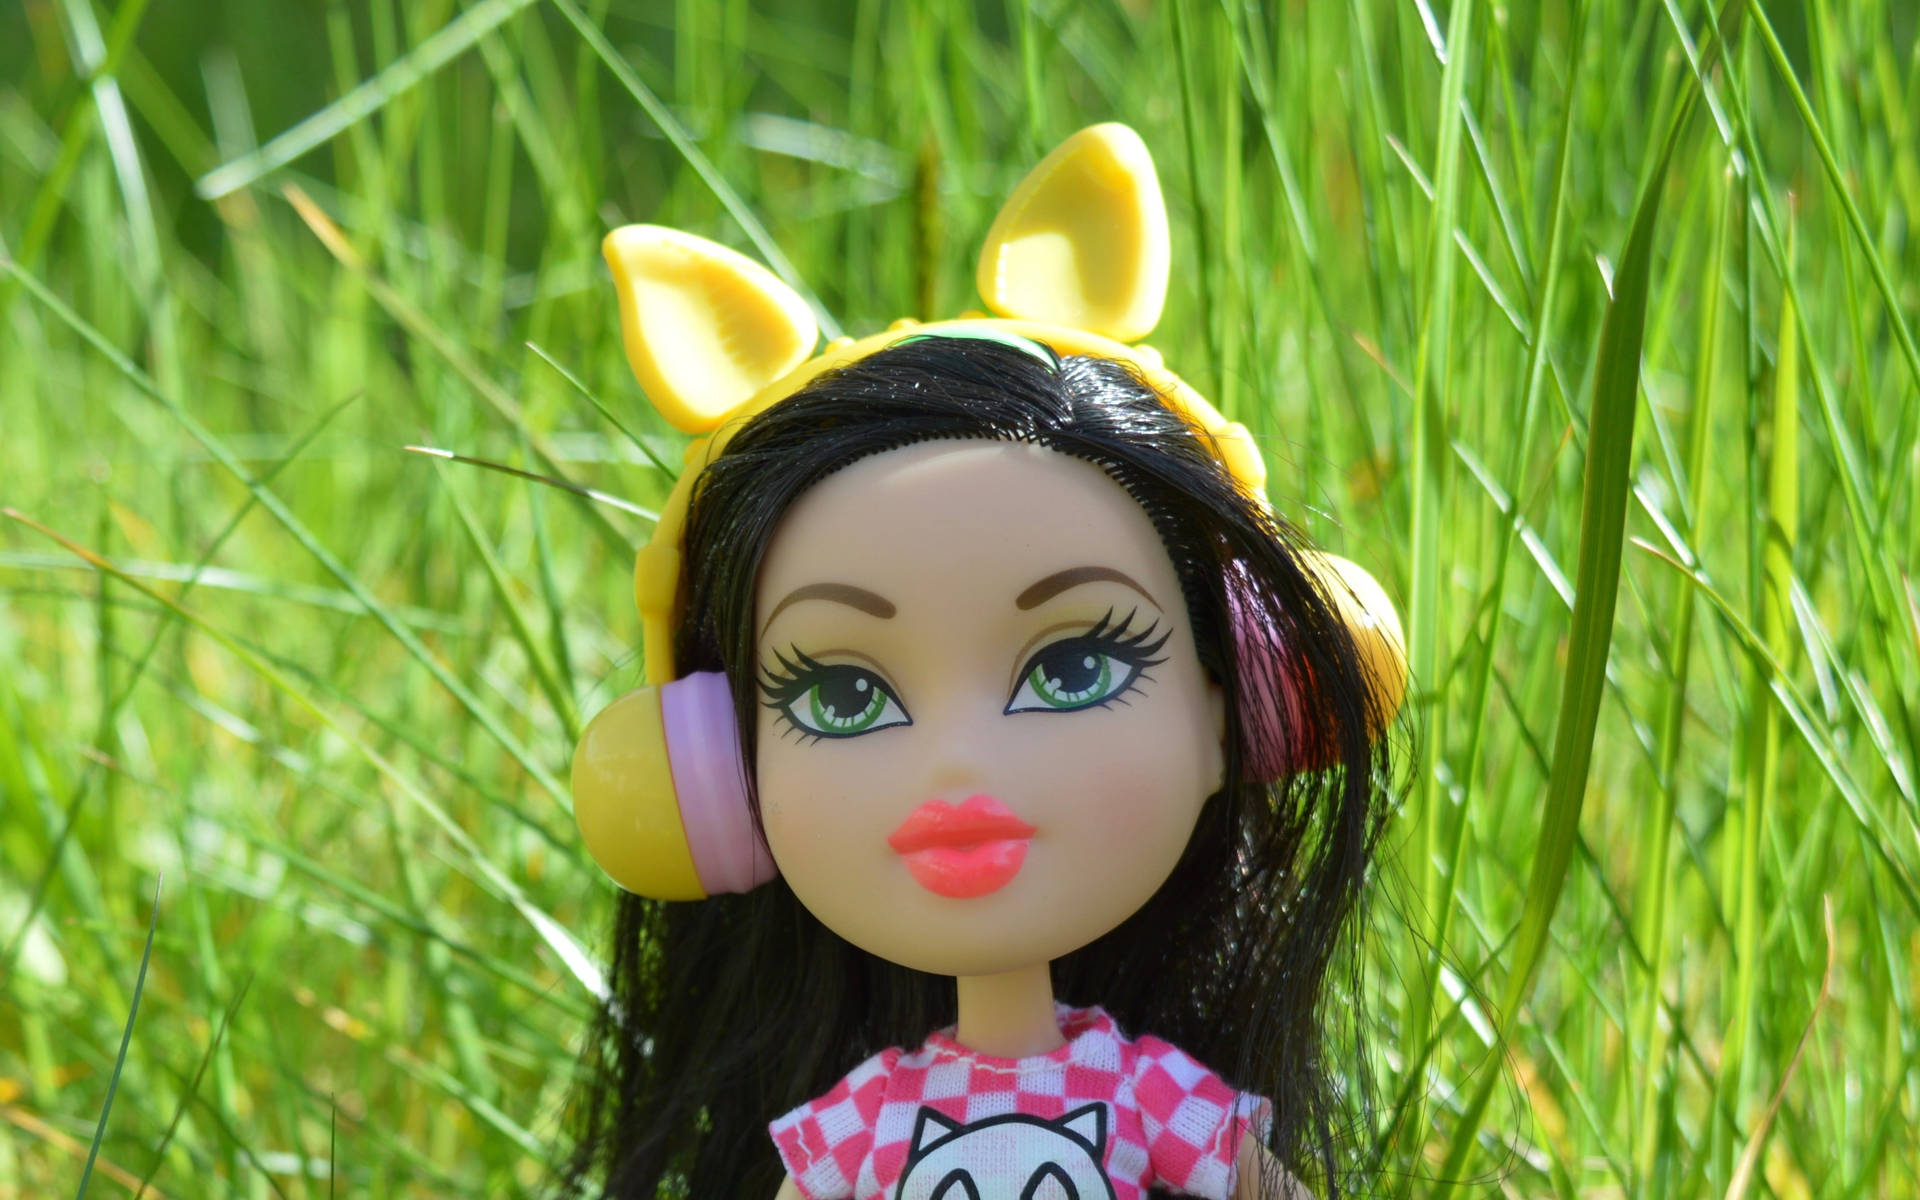 Bratz Toy Doll At Garden Background